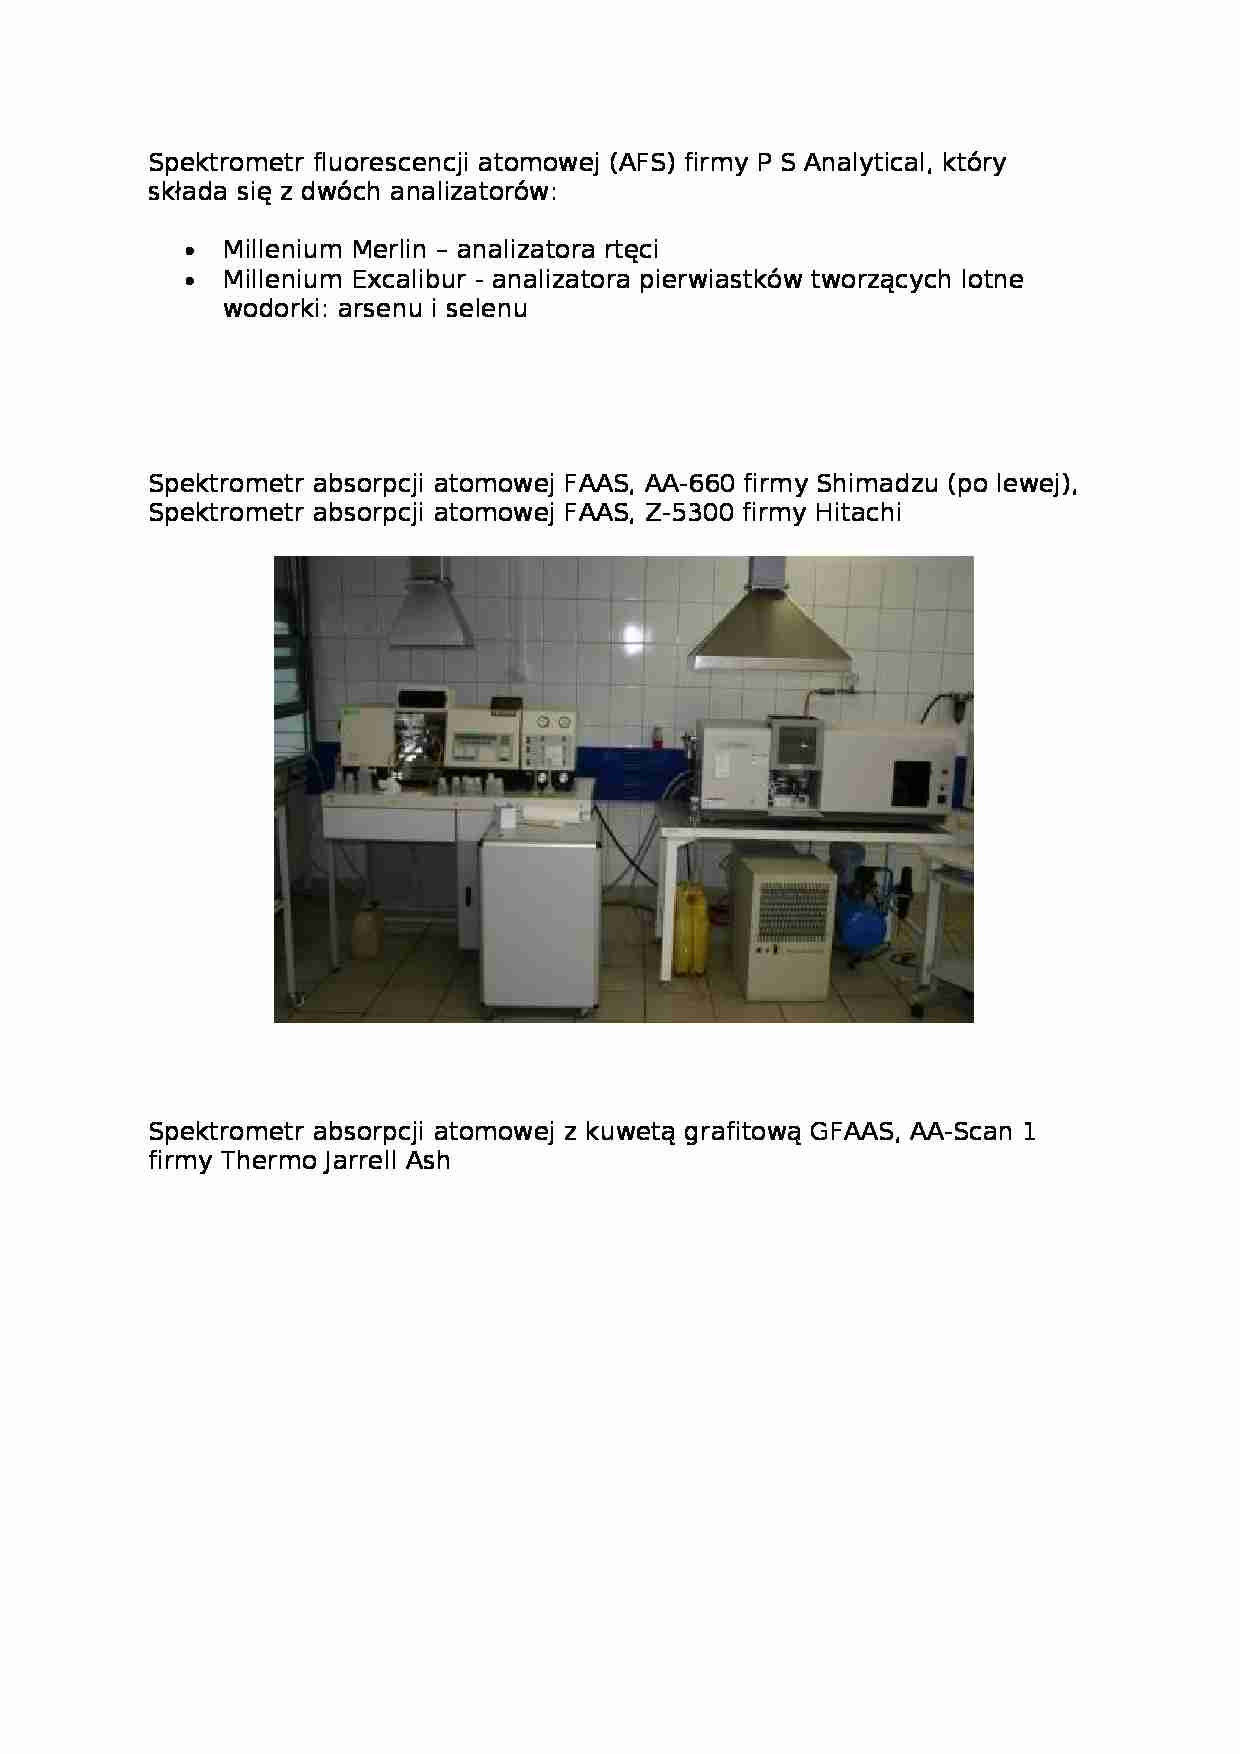 Spektrometr fluorescencji atomowej - omówienie - strona 1